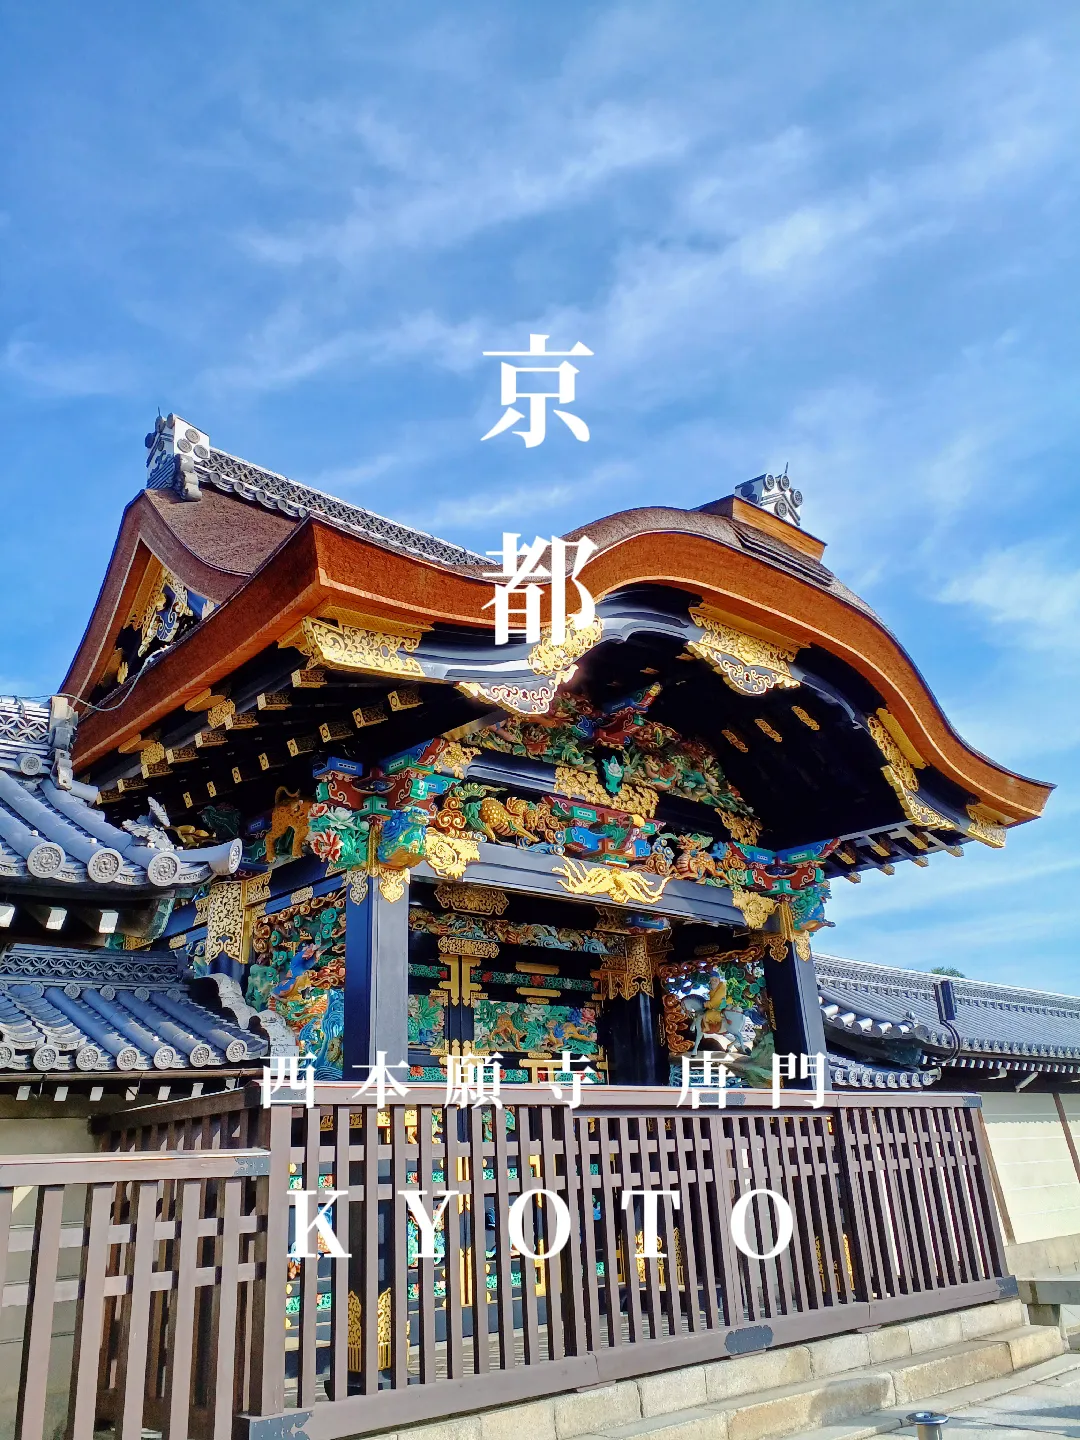 【京都ぶらり】秋晴れの京都 神社仏閣巡り 美しすぎる西本願寺唐門の画像 (0枚目)